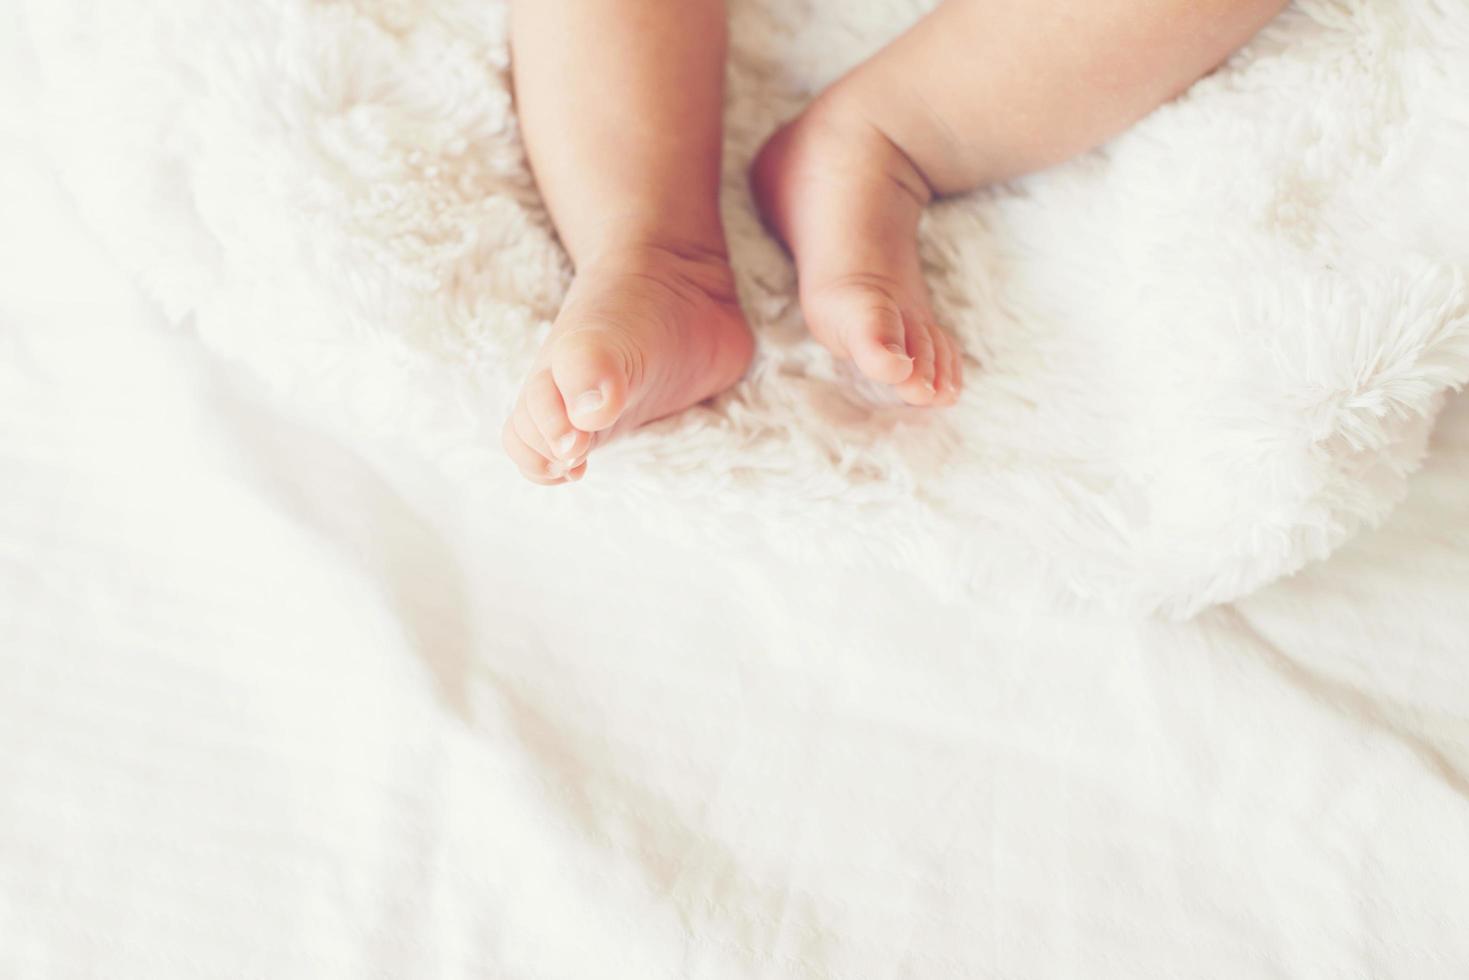 pasgeboren babybenen op wit bed. foto